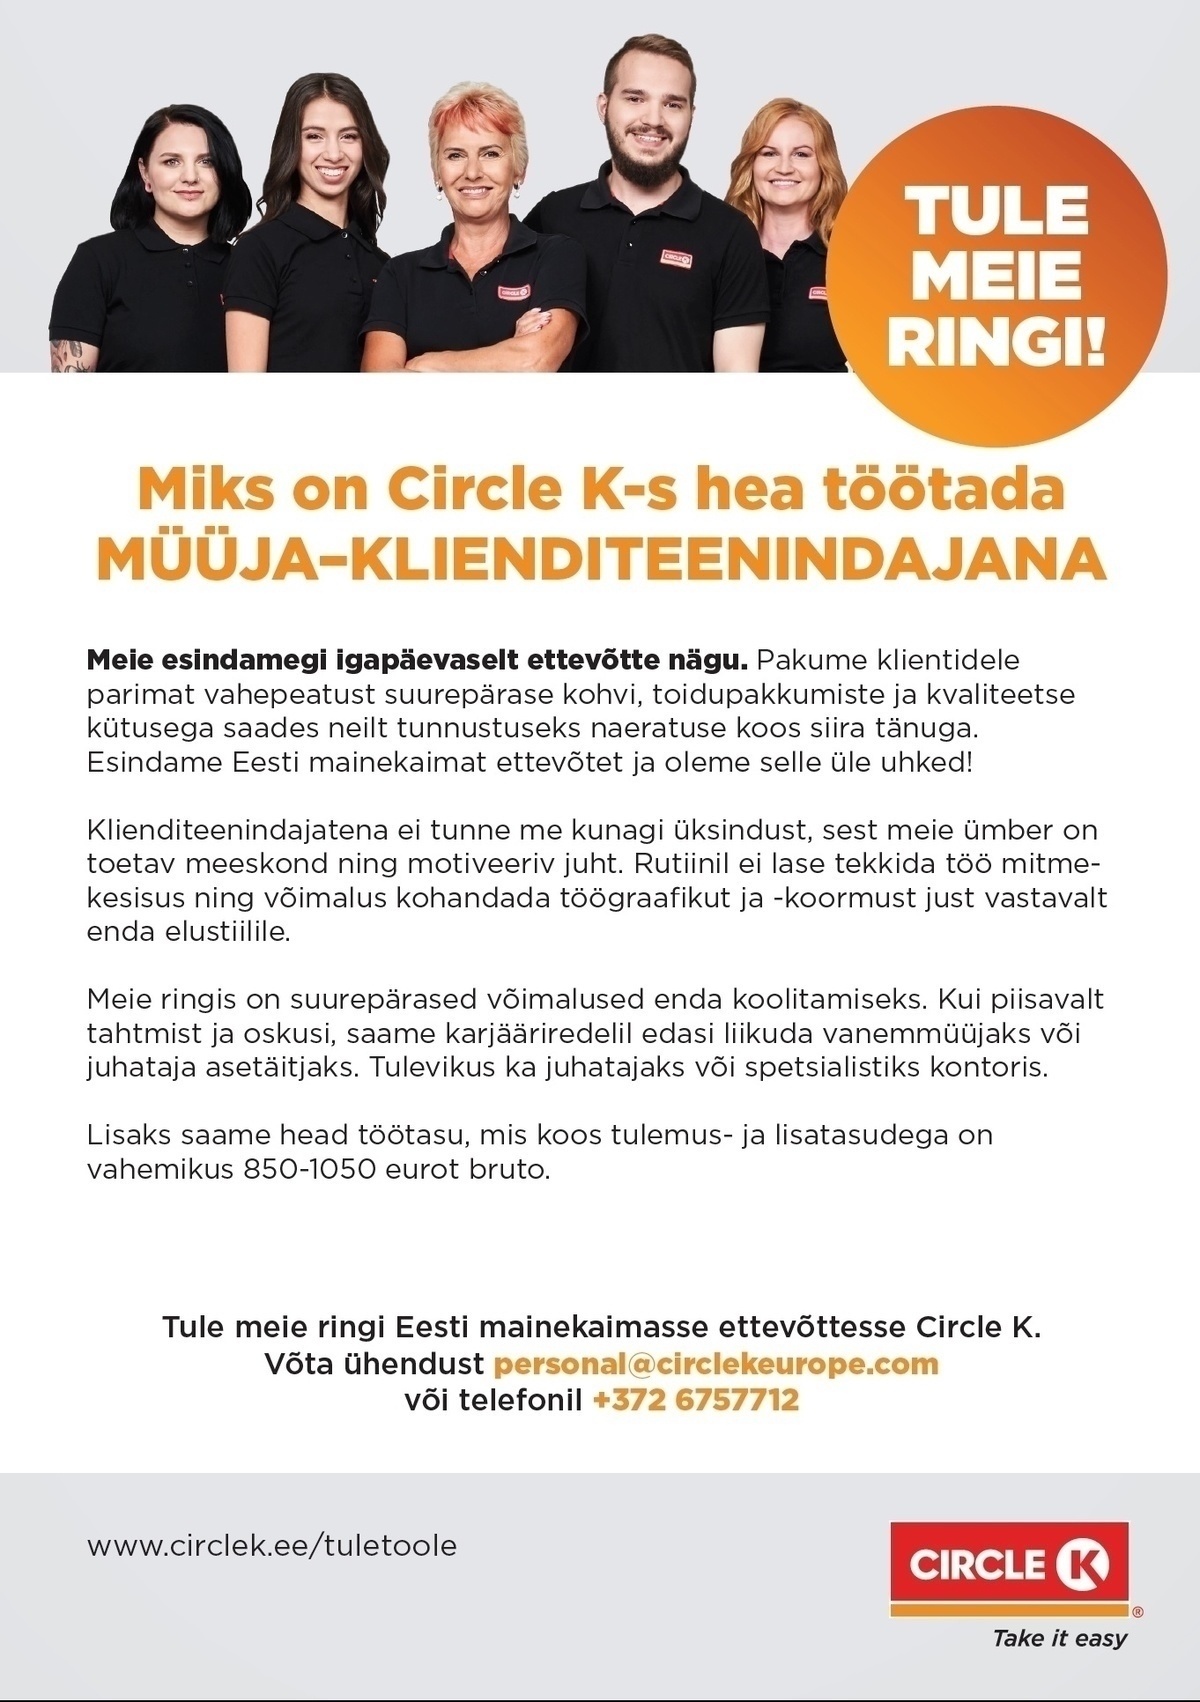 Circle K Eesti AS Müüja-klienditeenindaja Järve ja Nõmme teenindusjaamadesse